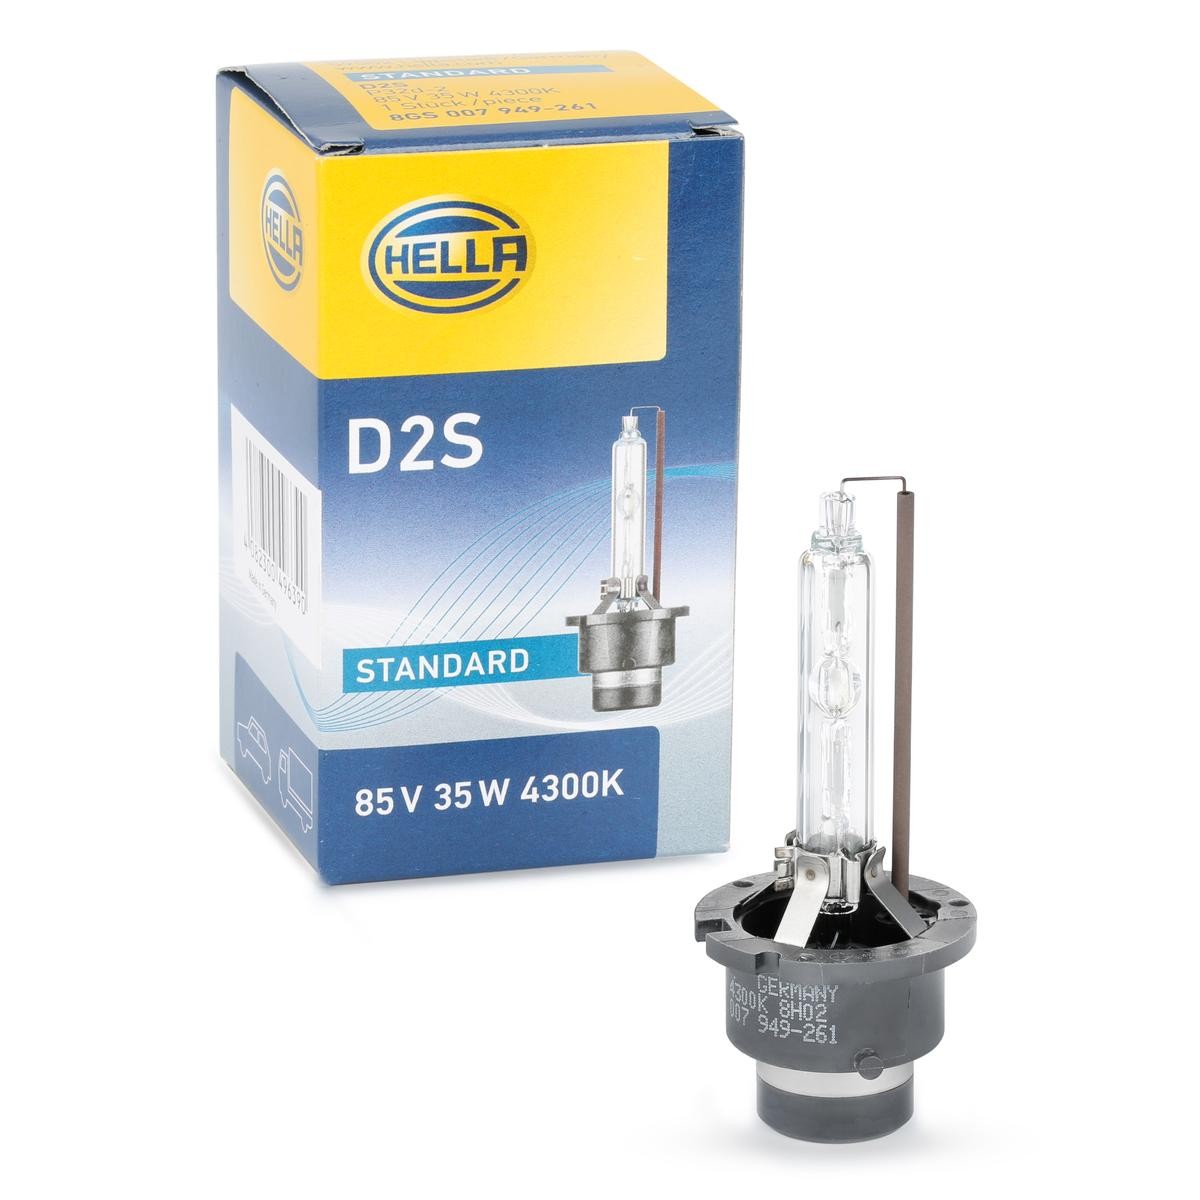 HID2S HELLA D2S (Gasentladungslampe) 85V 35W P32d-2 4300K Xenon Glühlampe, Fernscheinwerfer 8GS 007 949-261 günstig kaufen